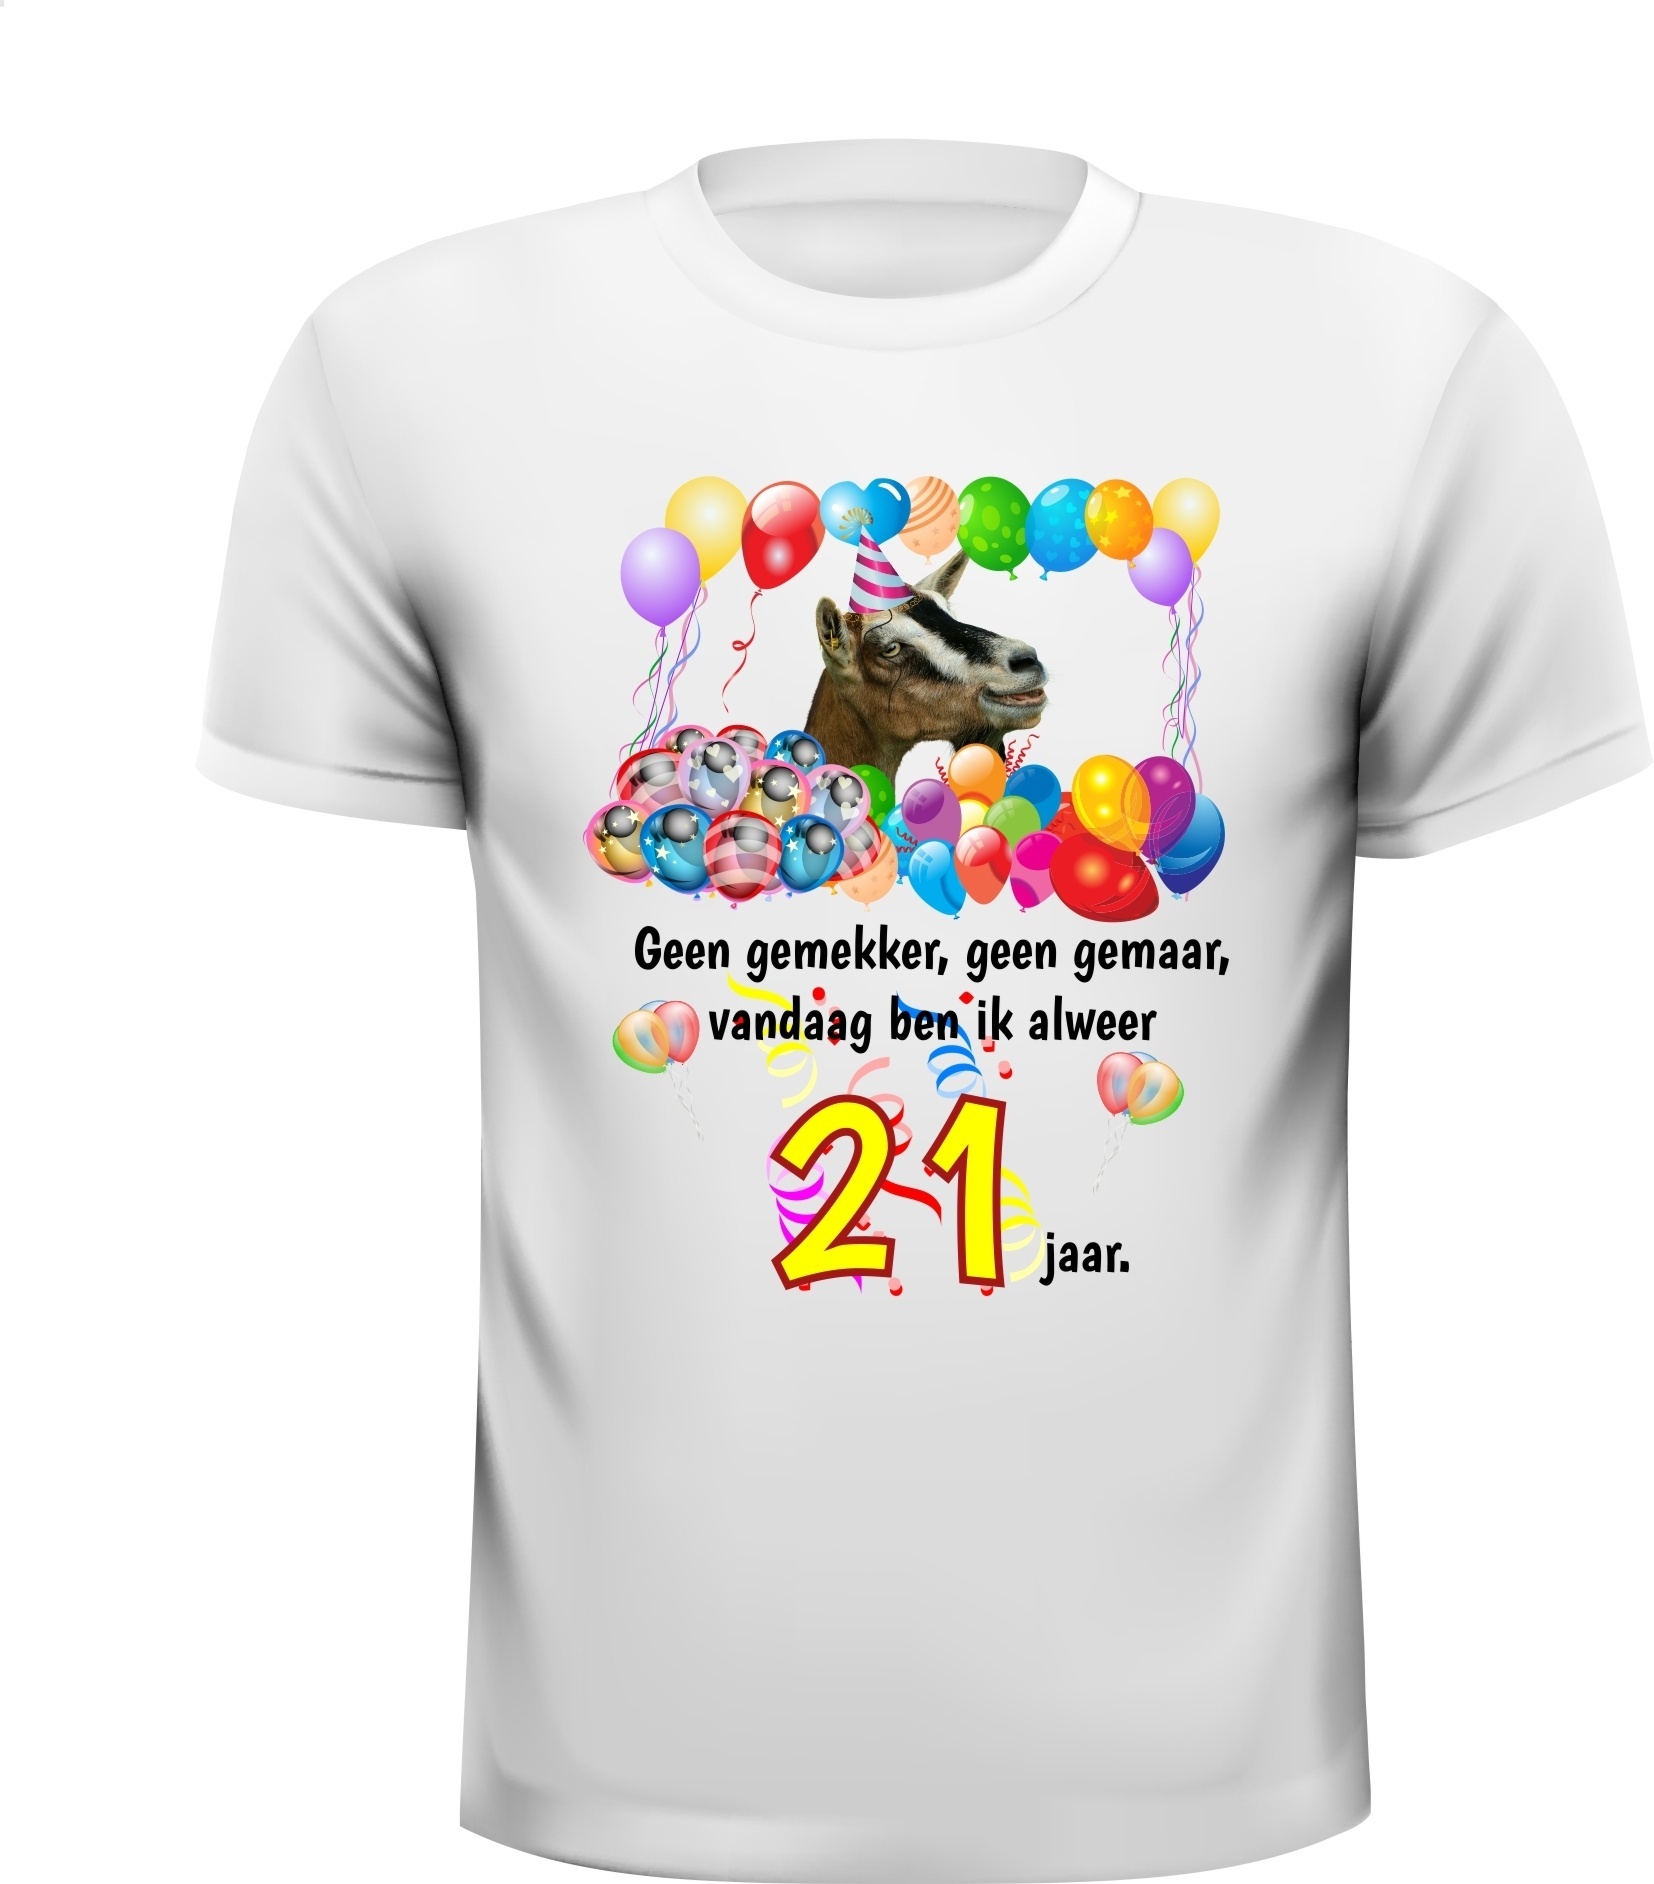 Feestelijk verjaardag shirt 21 jaar full colour met print van een geit